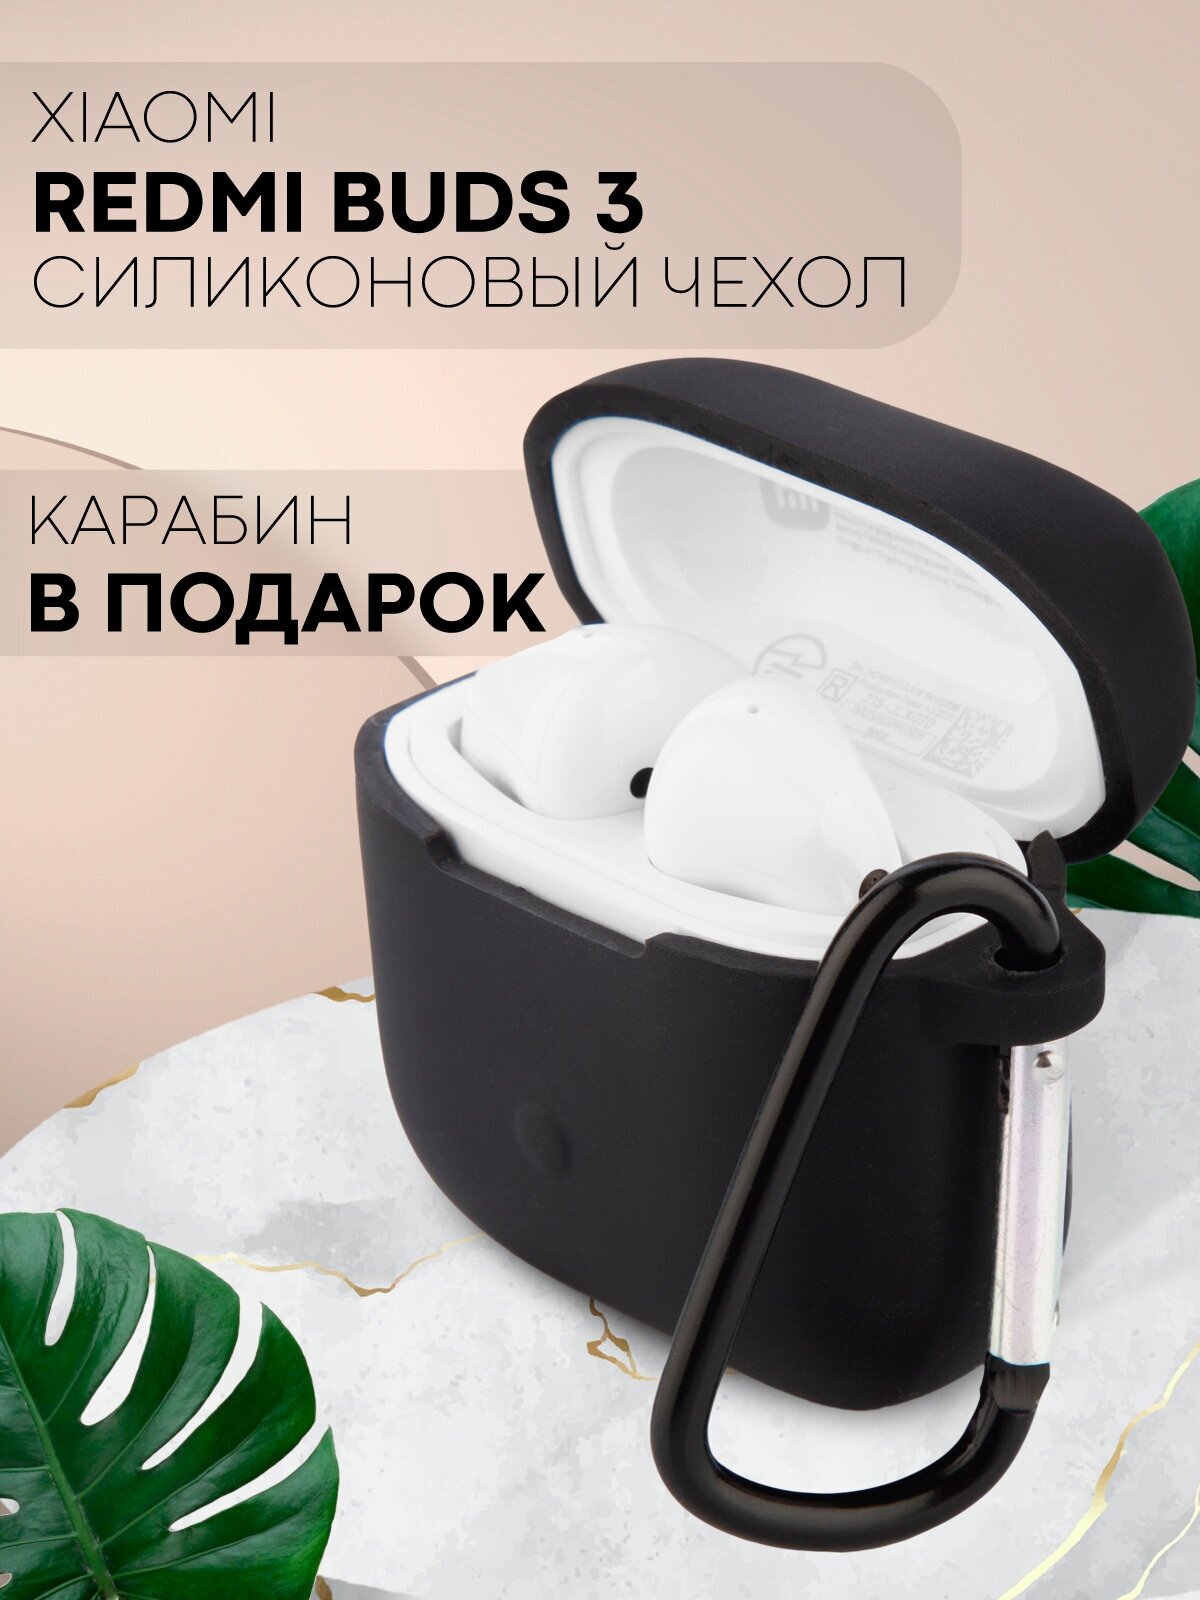 Силиконовый чехол для беспроводных наушников Xiaomi Redmi Buds 3 (Сяоми Редми Бадс 3) с матовым покрытием, бренд картофан, цвет черный